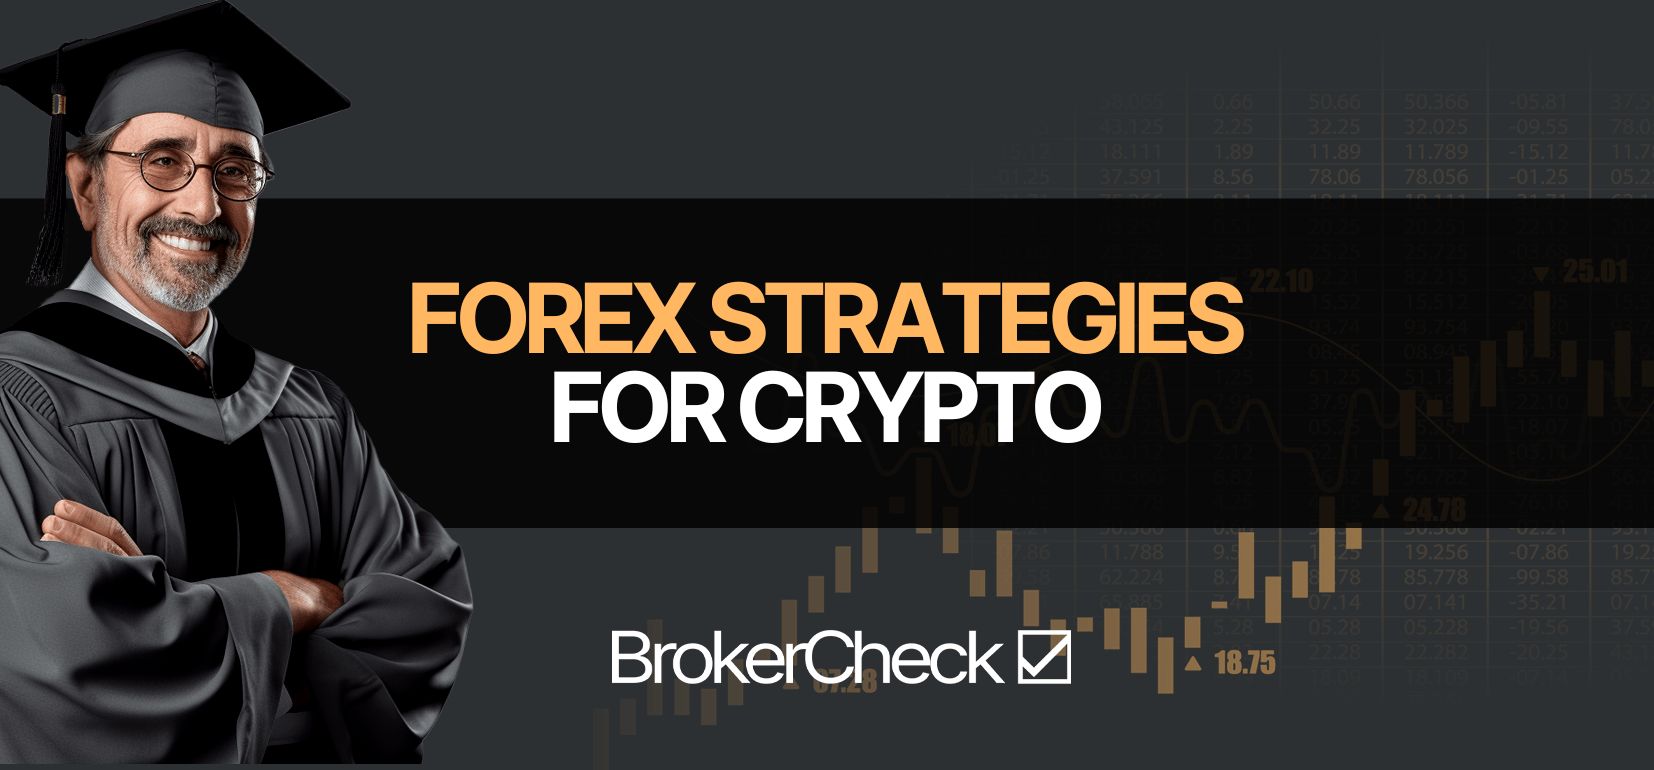 Forex Strategier for krypto